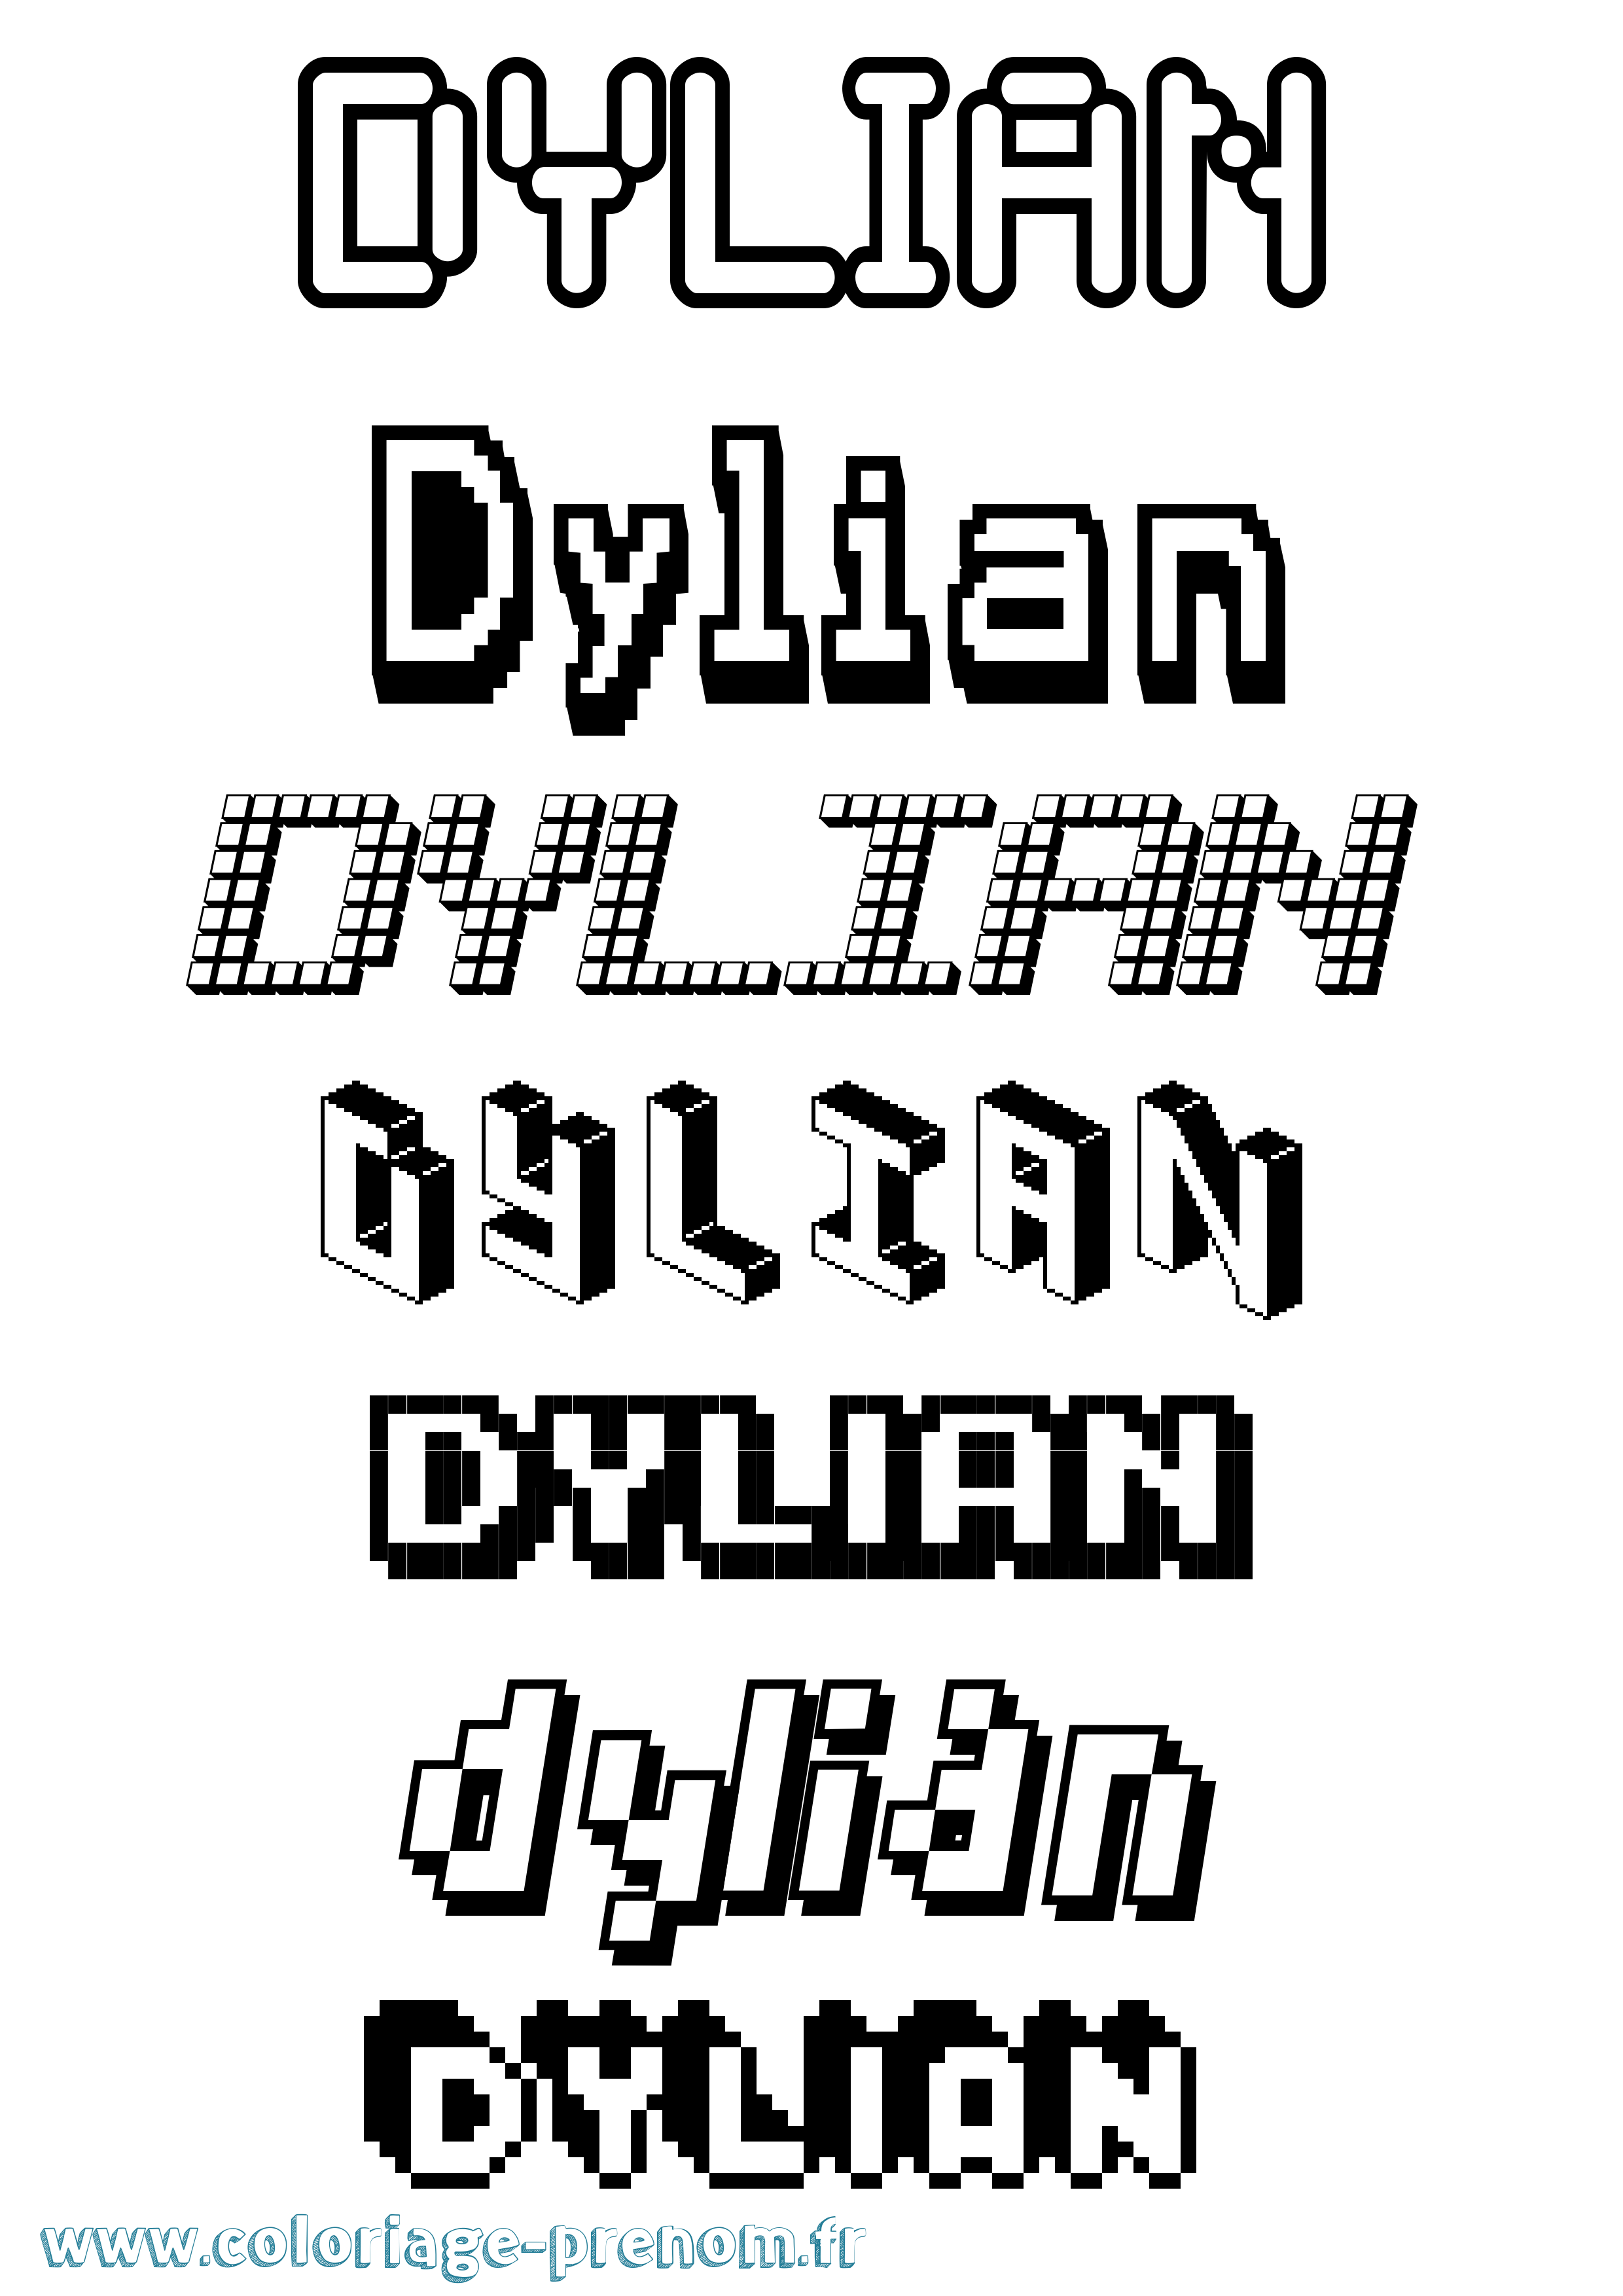 Coloriage prénom Dylian Pixel